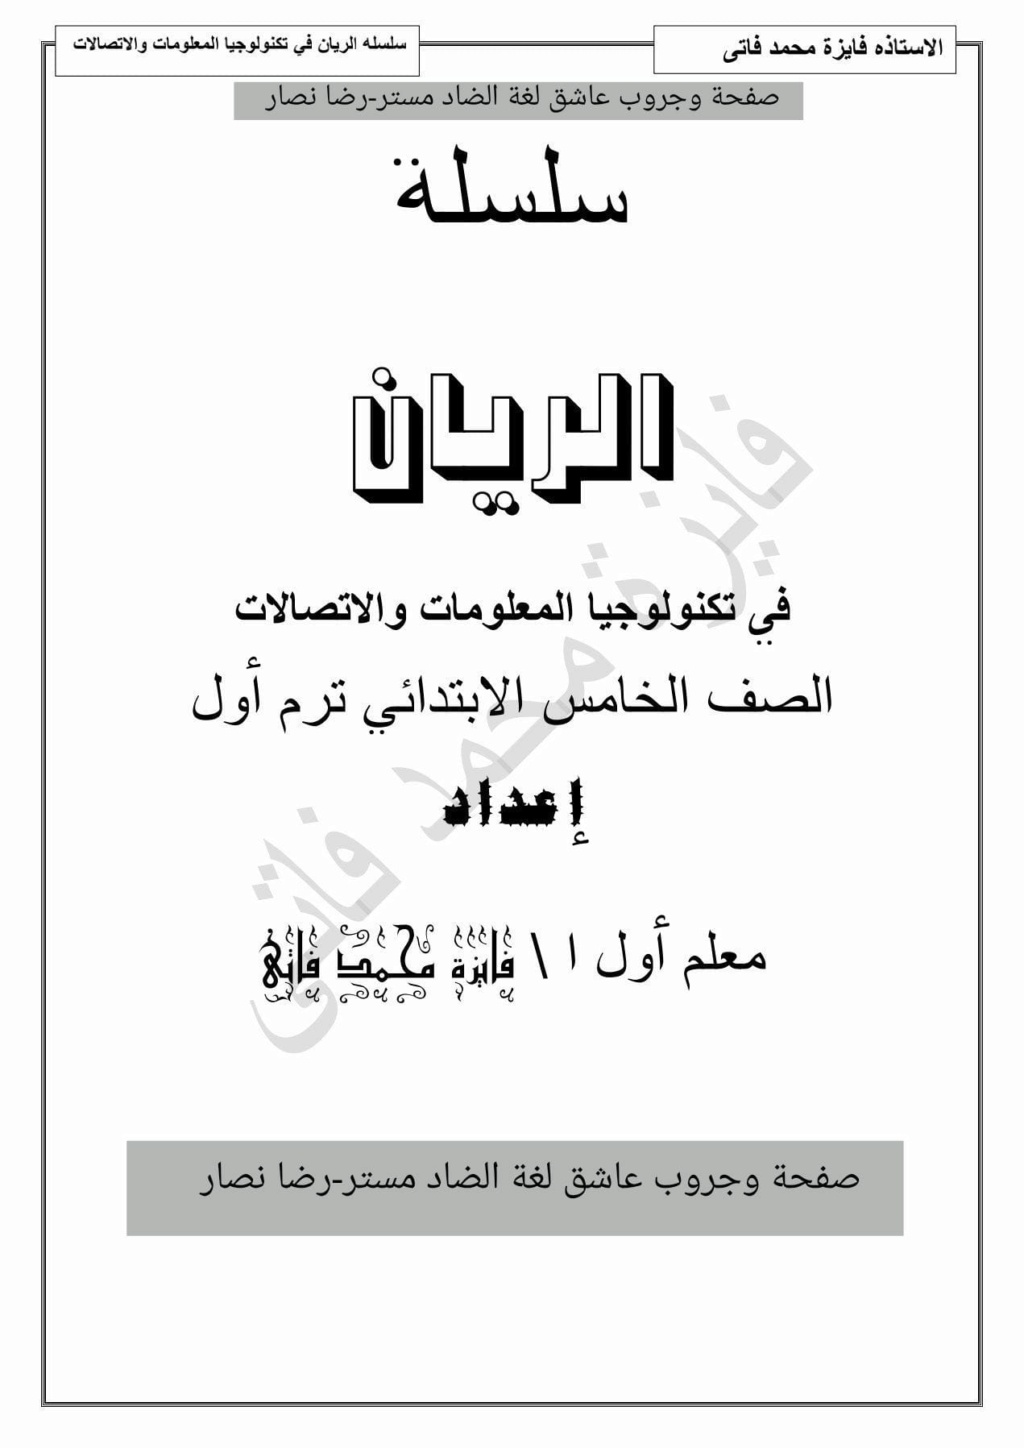 مذكرة تكنولوجيا المعلومات للصف الخامس الإبتدائى ترم أول pdf أ. فايزة محمد فاتي Img_2018